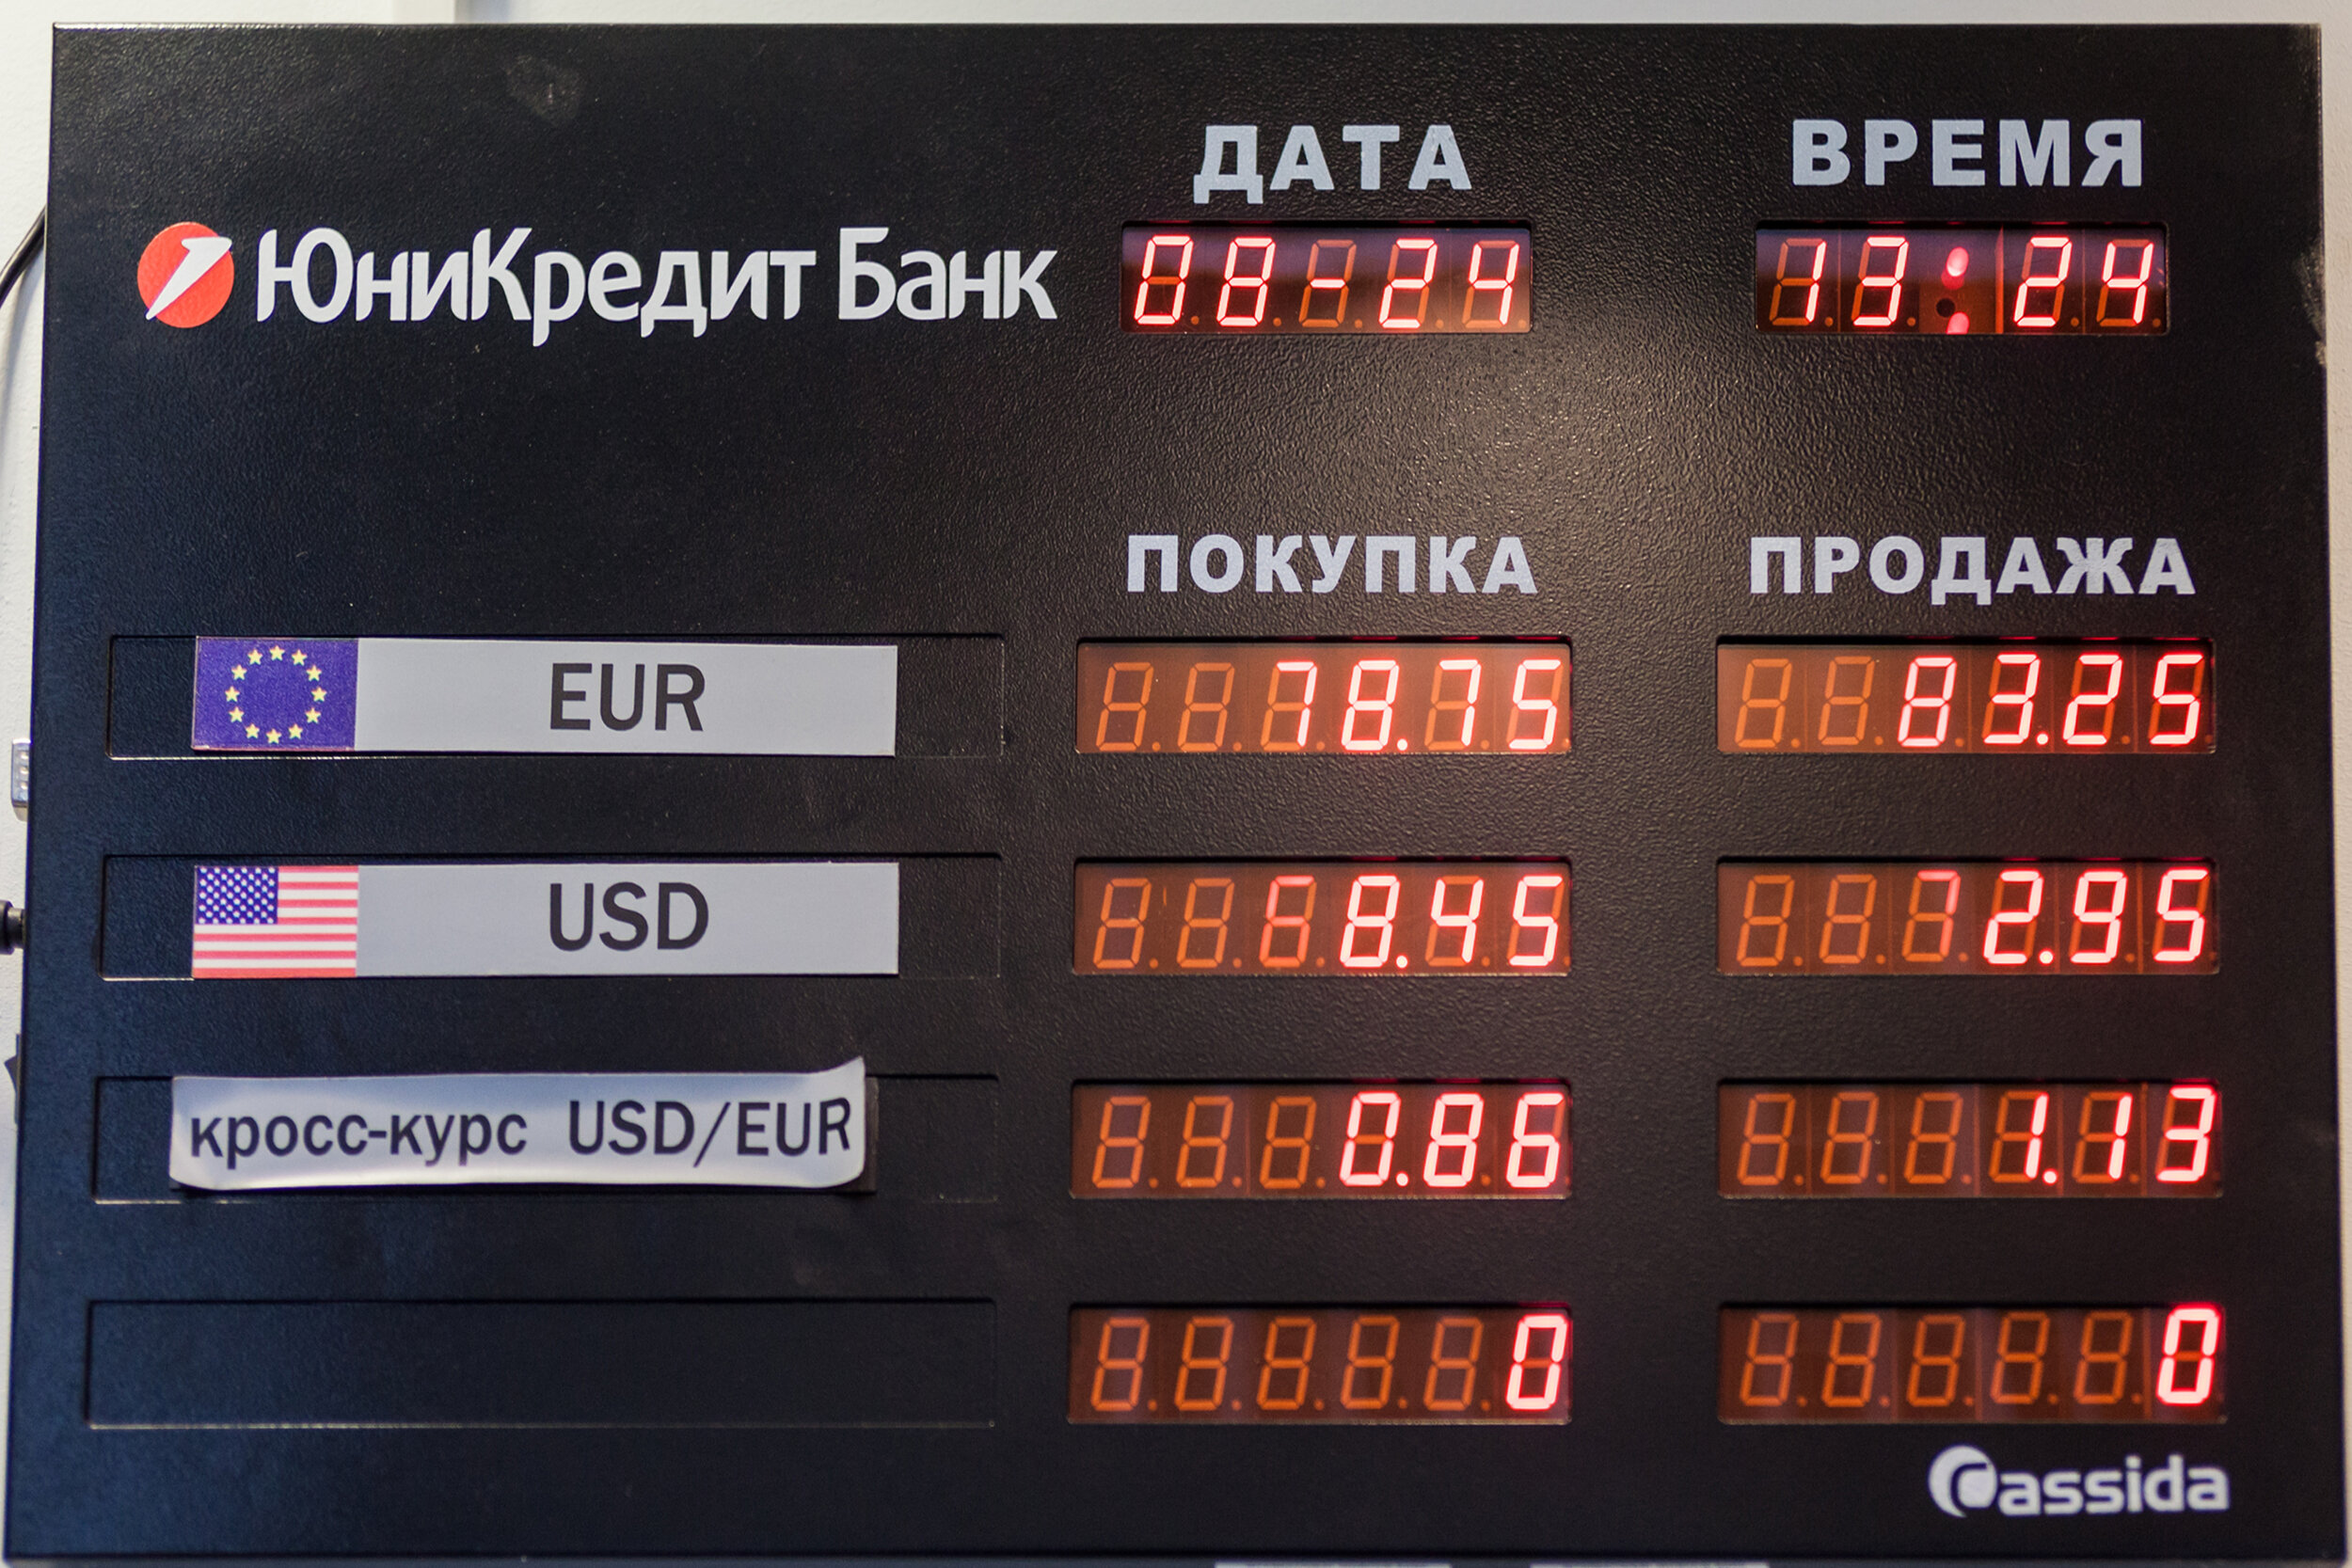 Курсы валют рф рублях. Курсы валют. Табло курса валют. Табло курсов валют. Табло валют в банке.